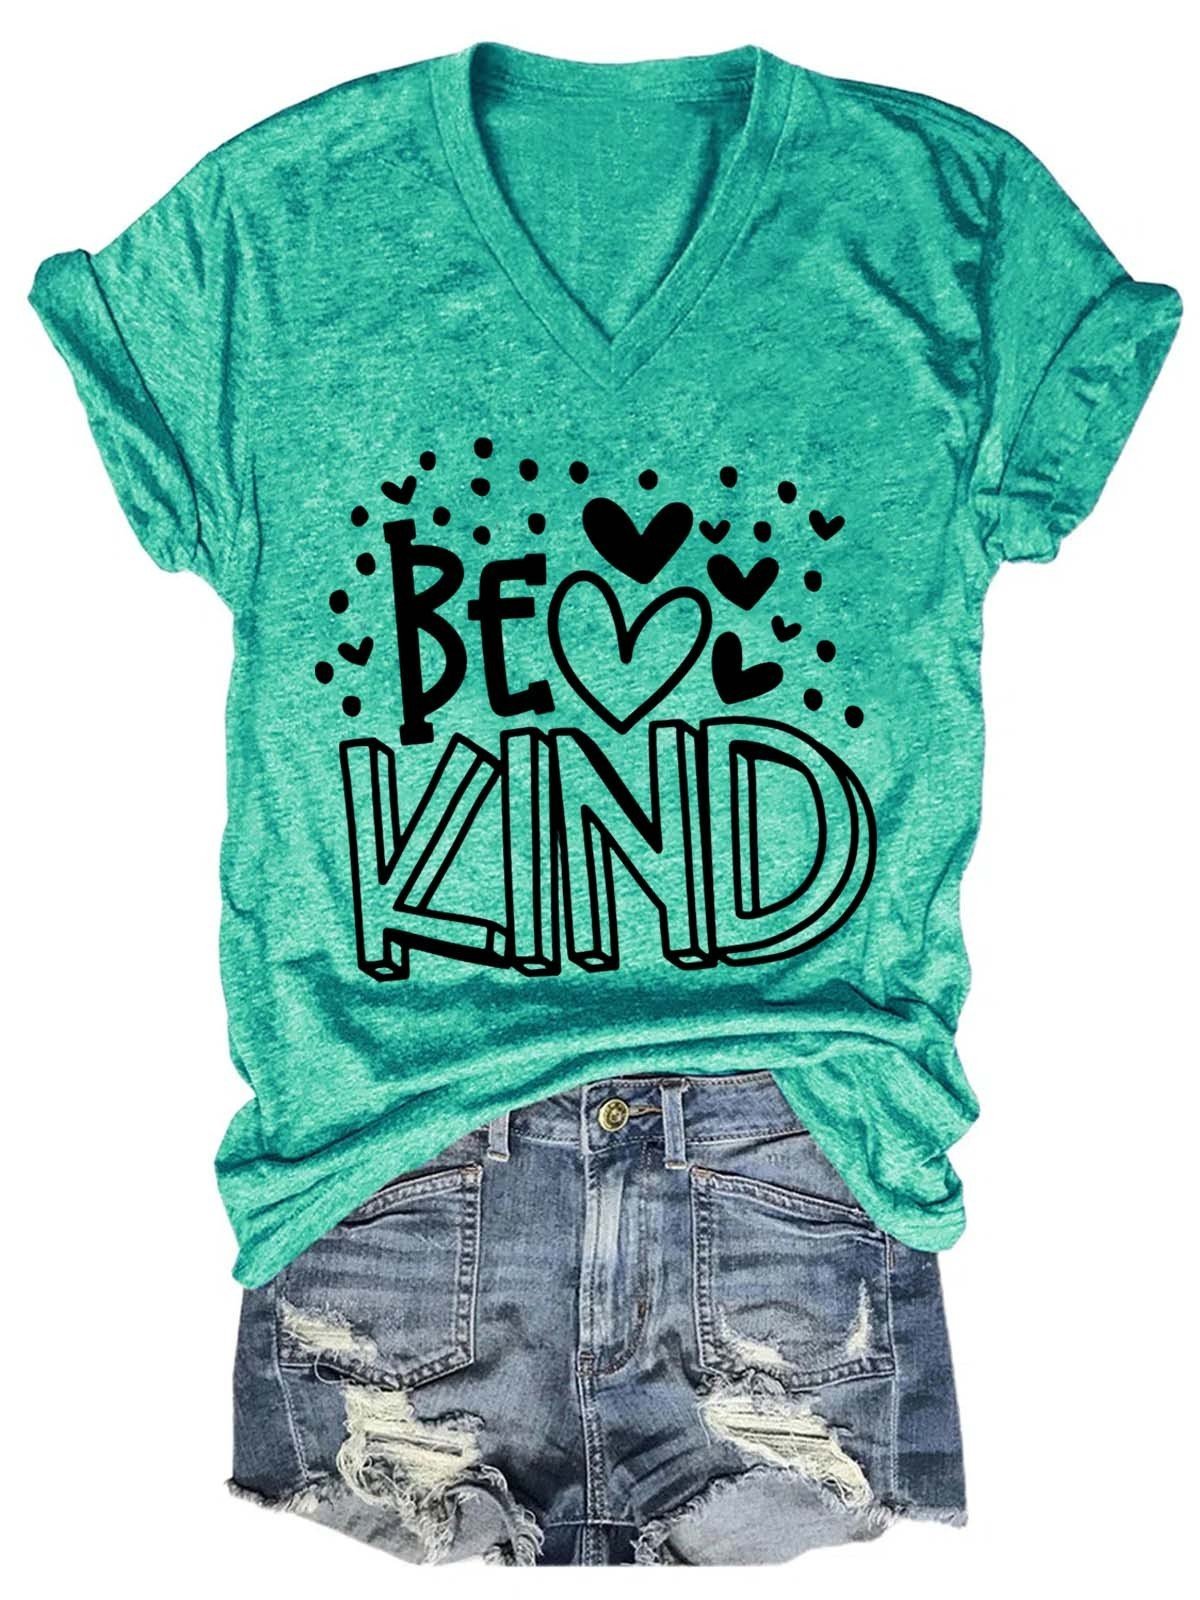 Women's Be Kind  V-Neck T-Shirt - Outlets Forever